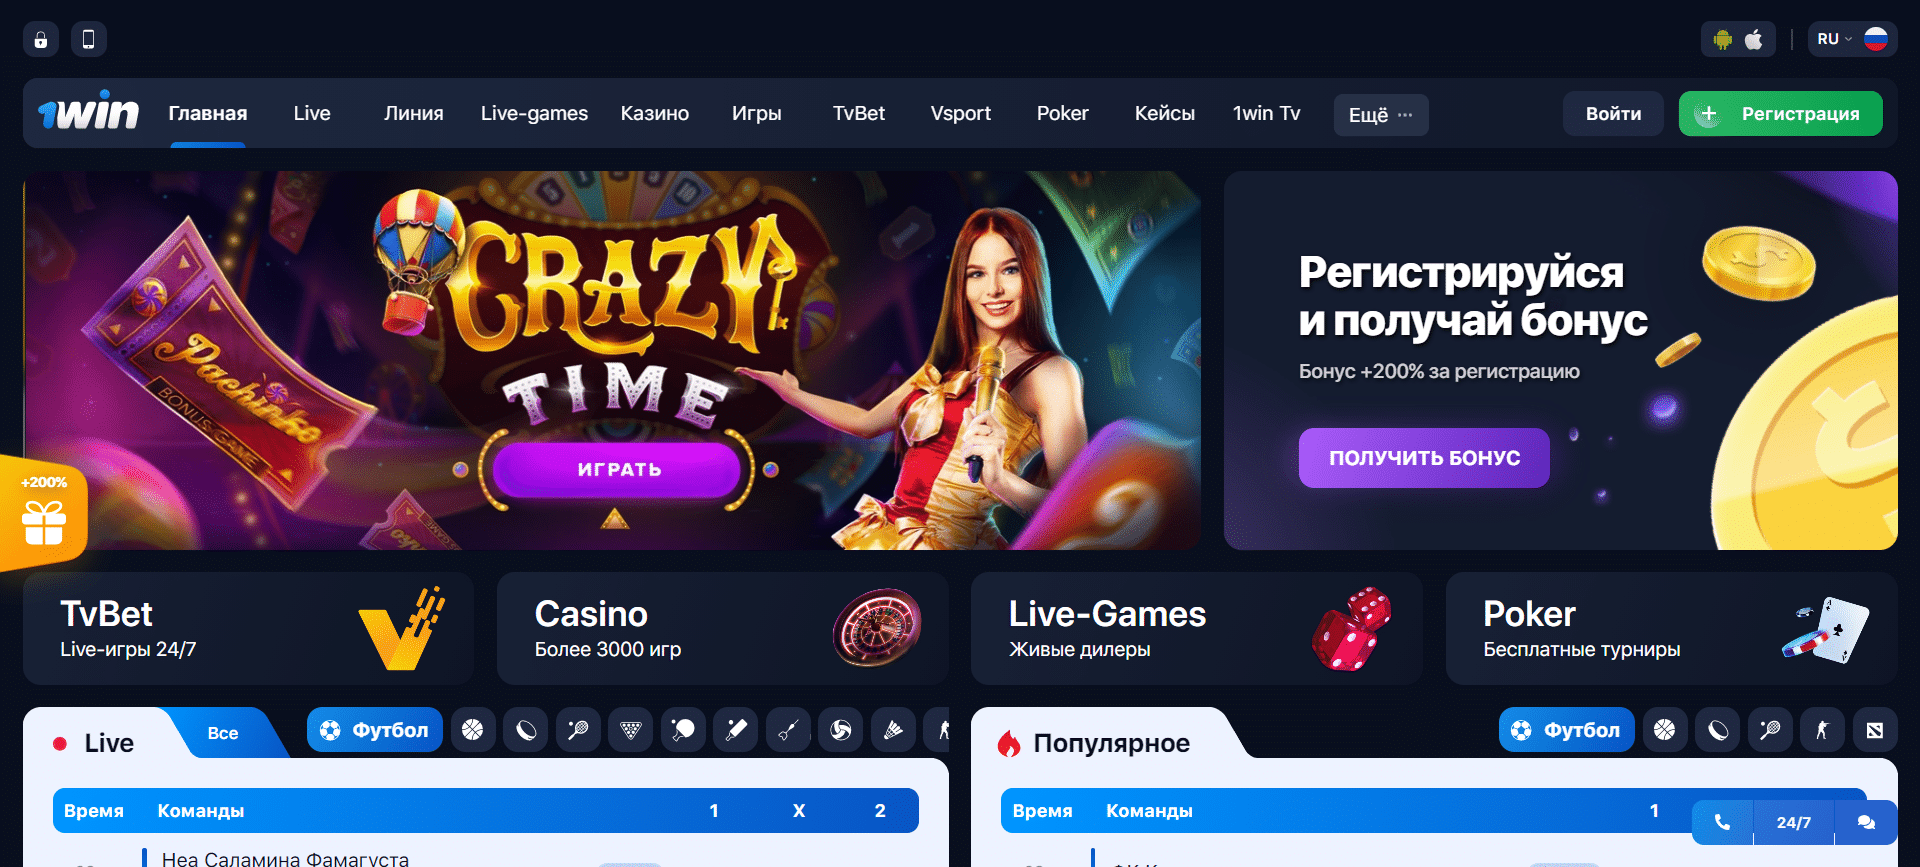 1win казино играть онлайн бесплатно